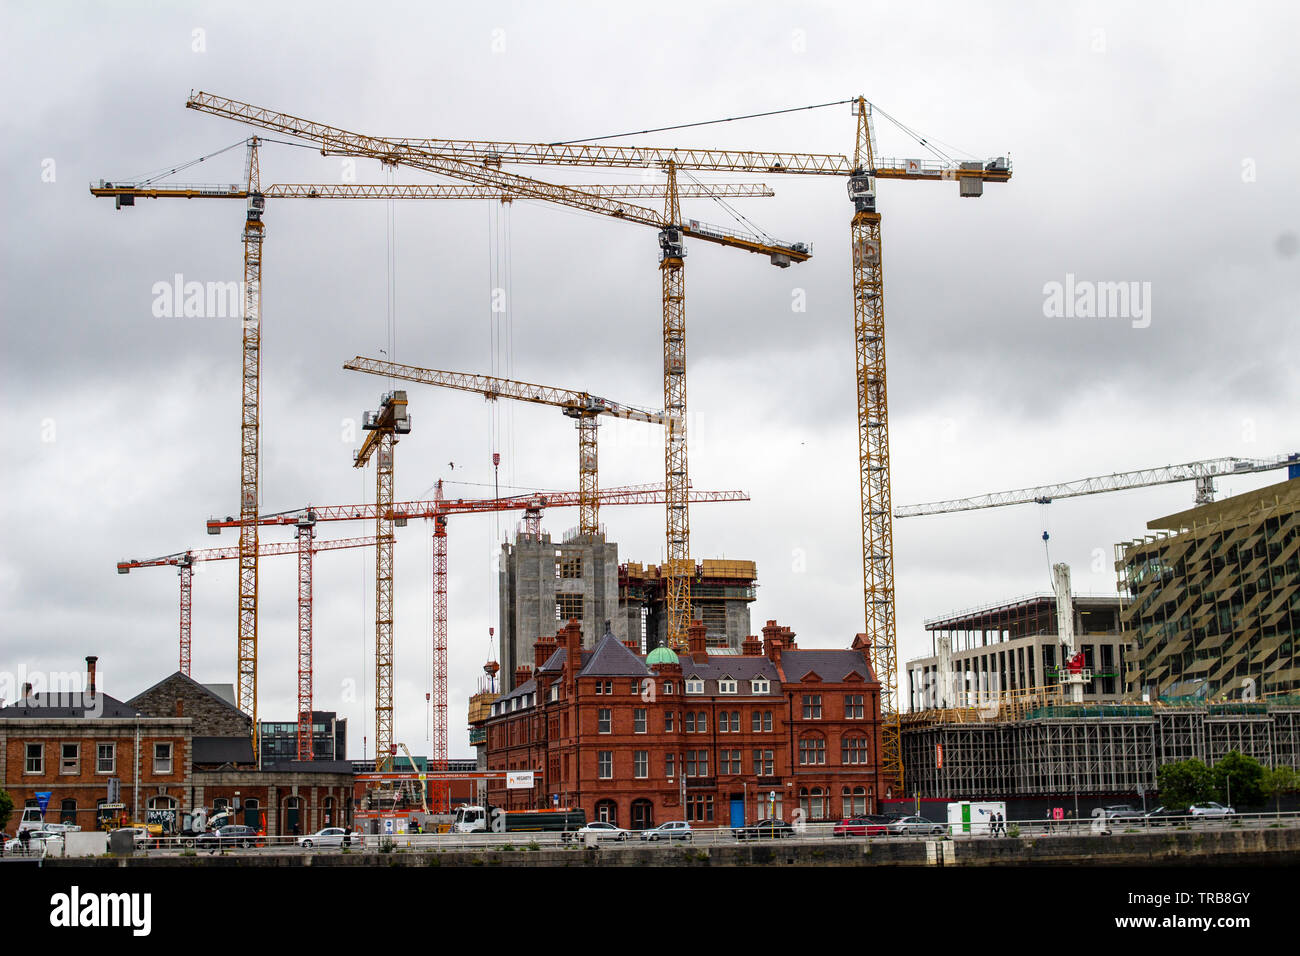 Les grues de construction sur l'un des nombreux sites de construction dans le quartier des docks de Dublin, Irlande.. Banque D'Images